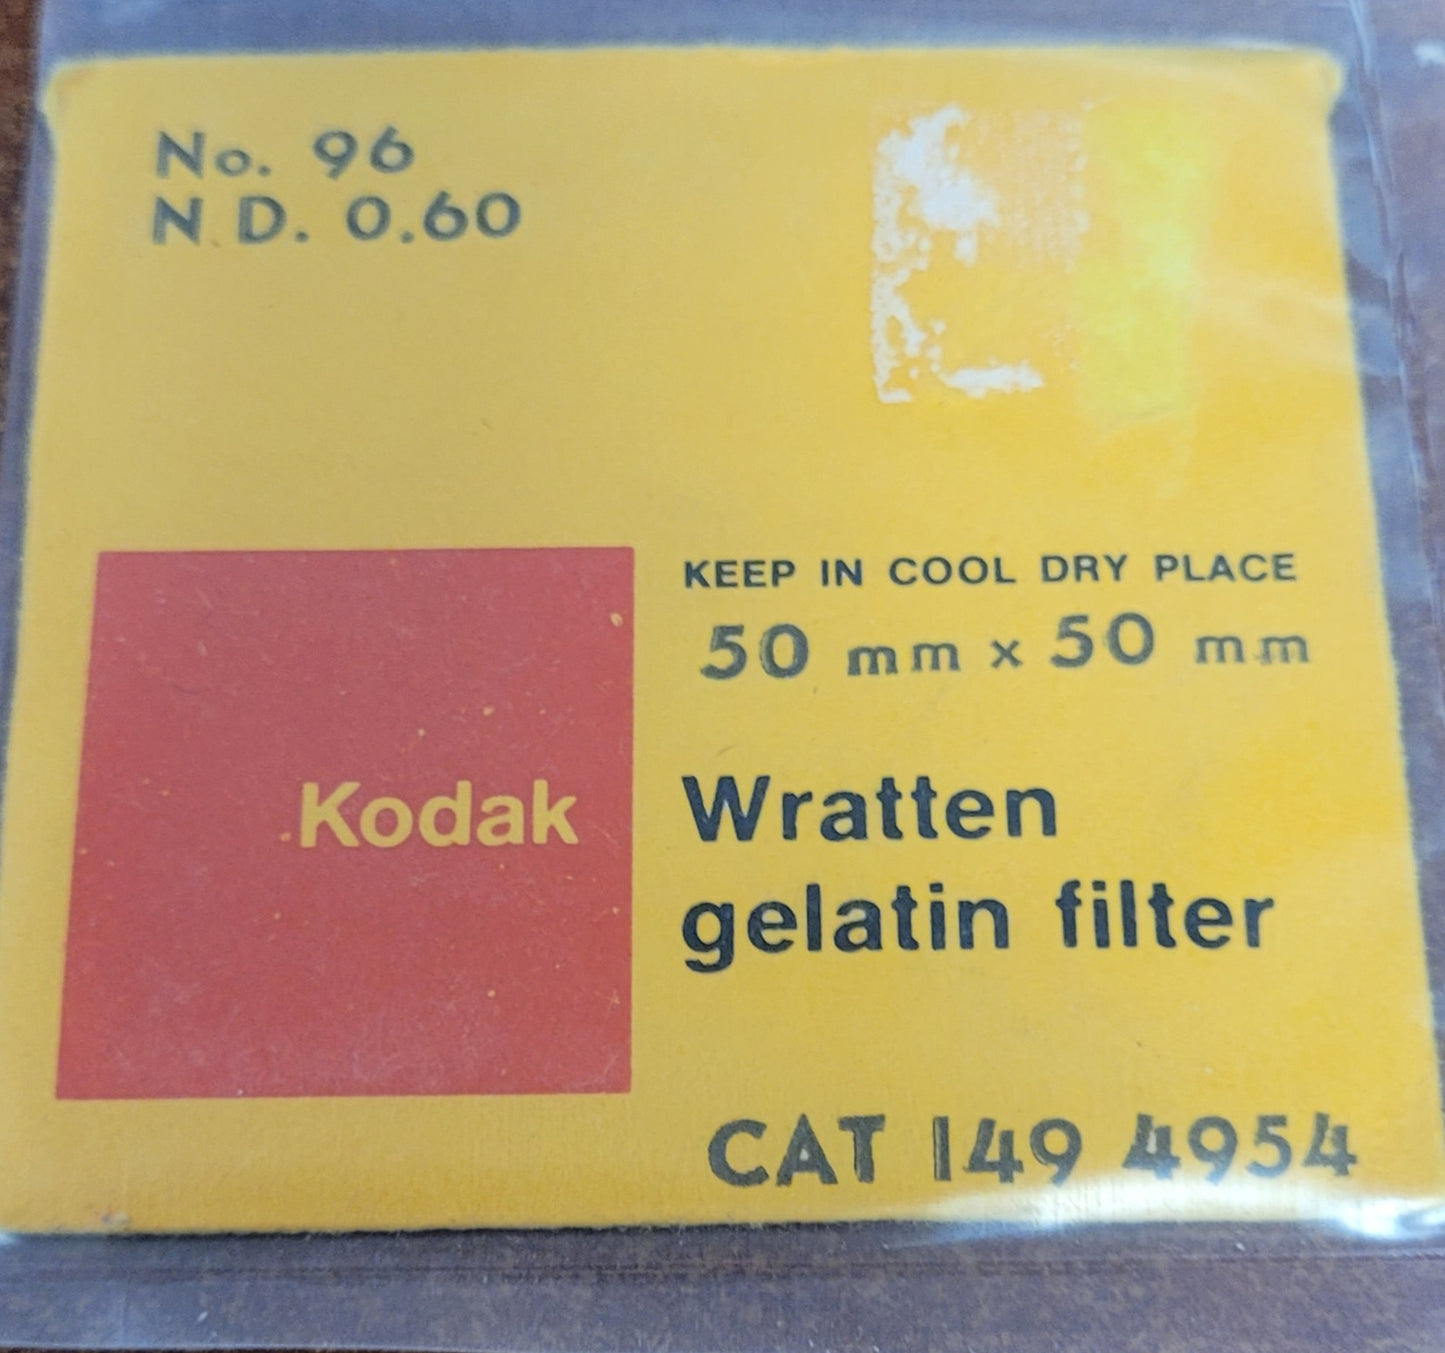 Kodak Wratten Gel Filter (No.96 ND.60)  2" x 2"